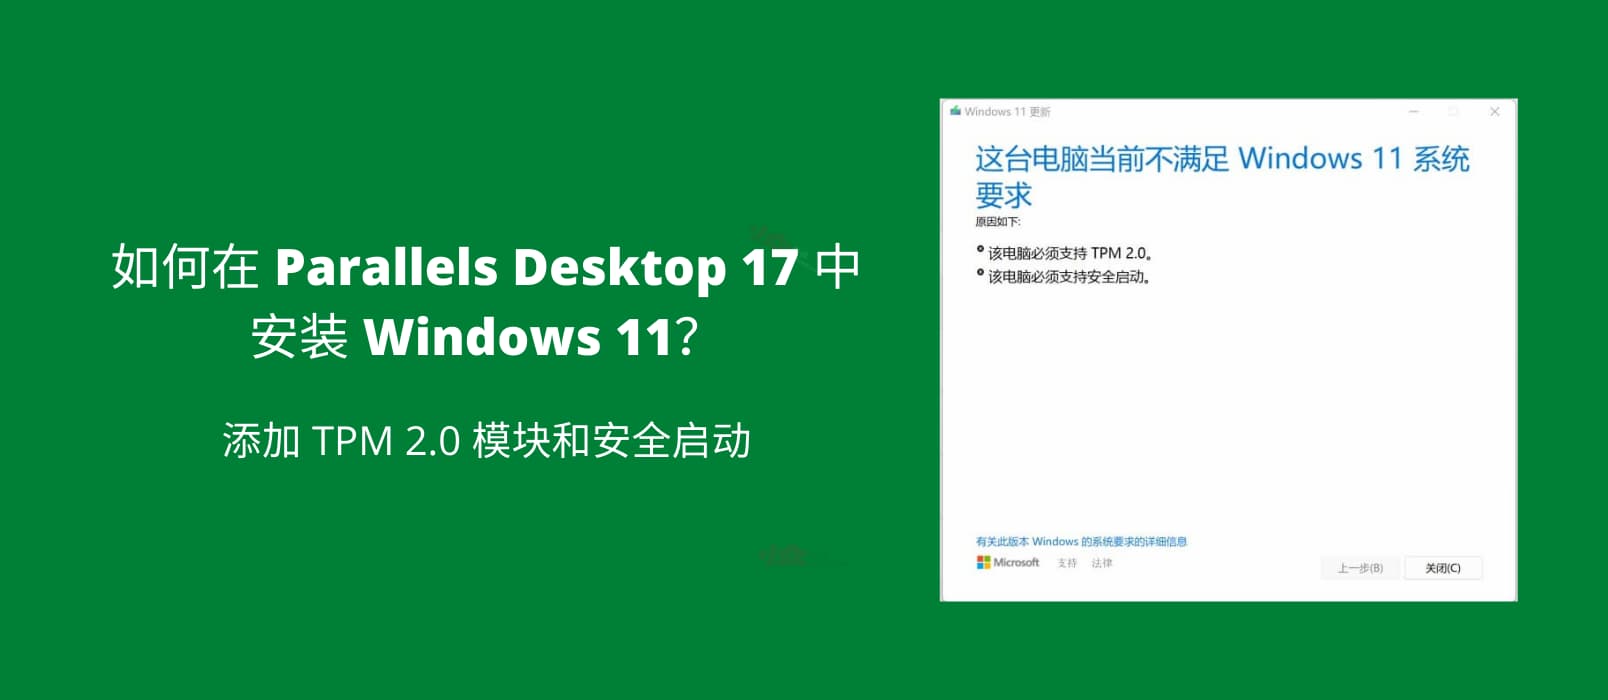 如何在 Parallels Desktop 17 中安装 Windows 11？ 添加 TPM 2.0 模块和安全启动 1